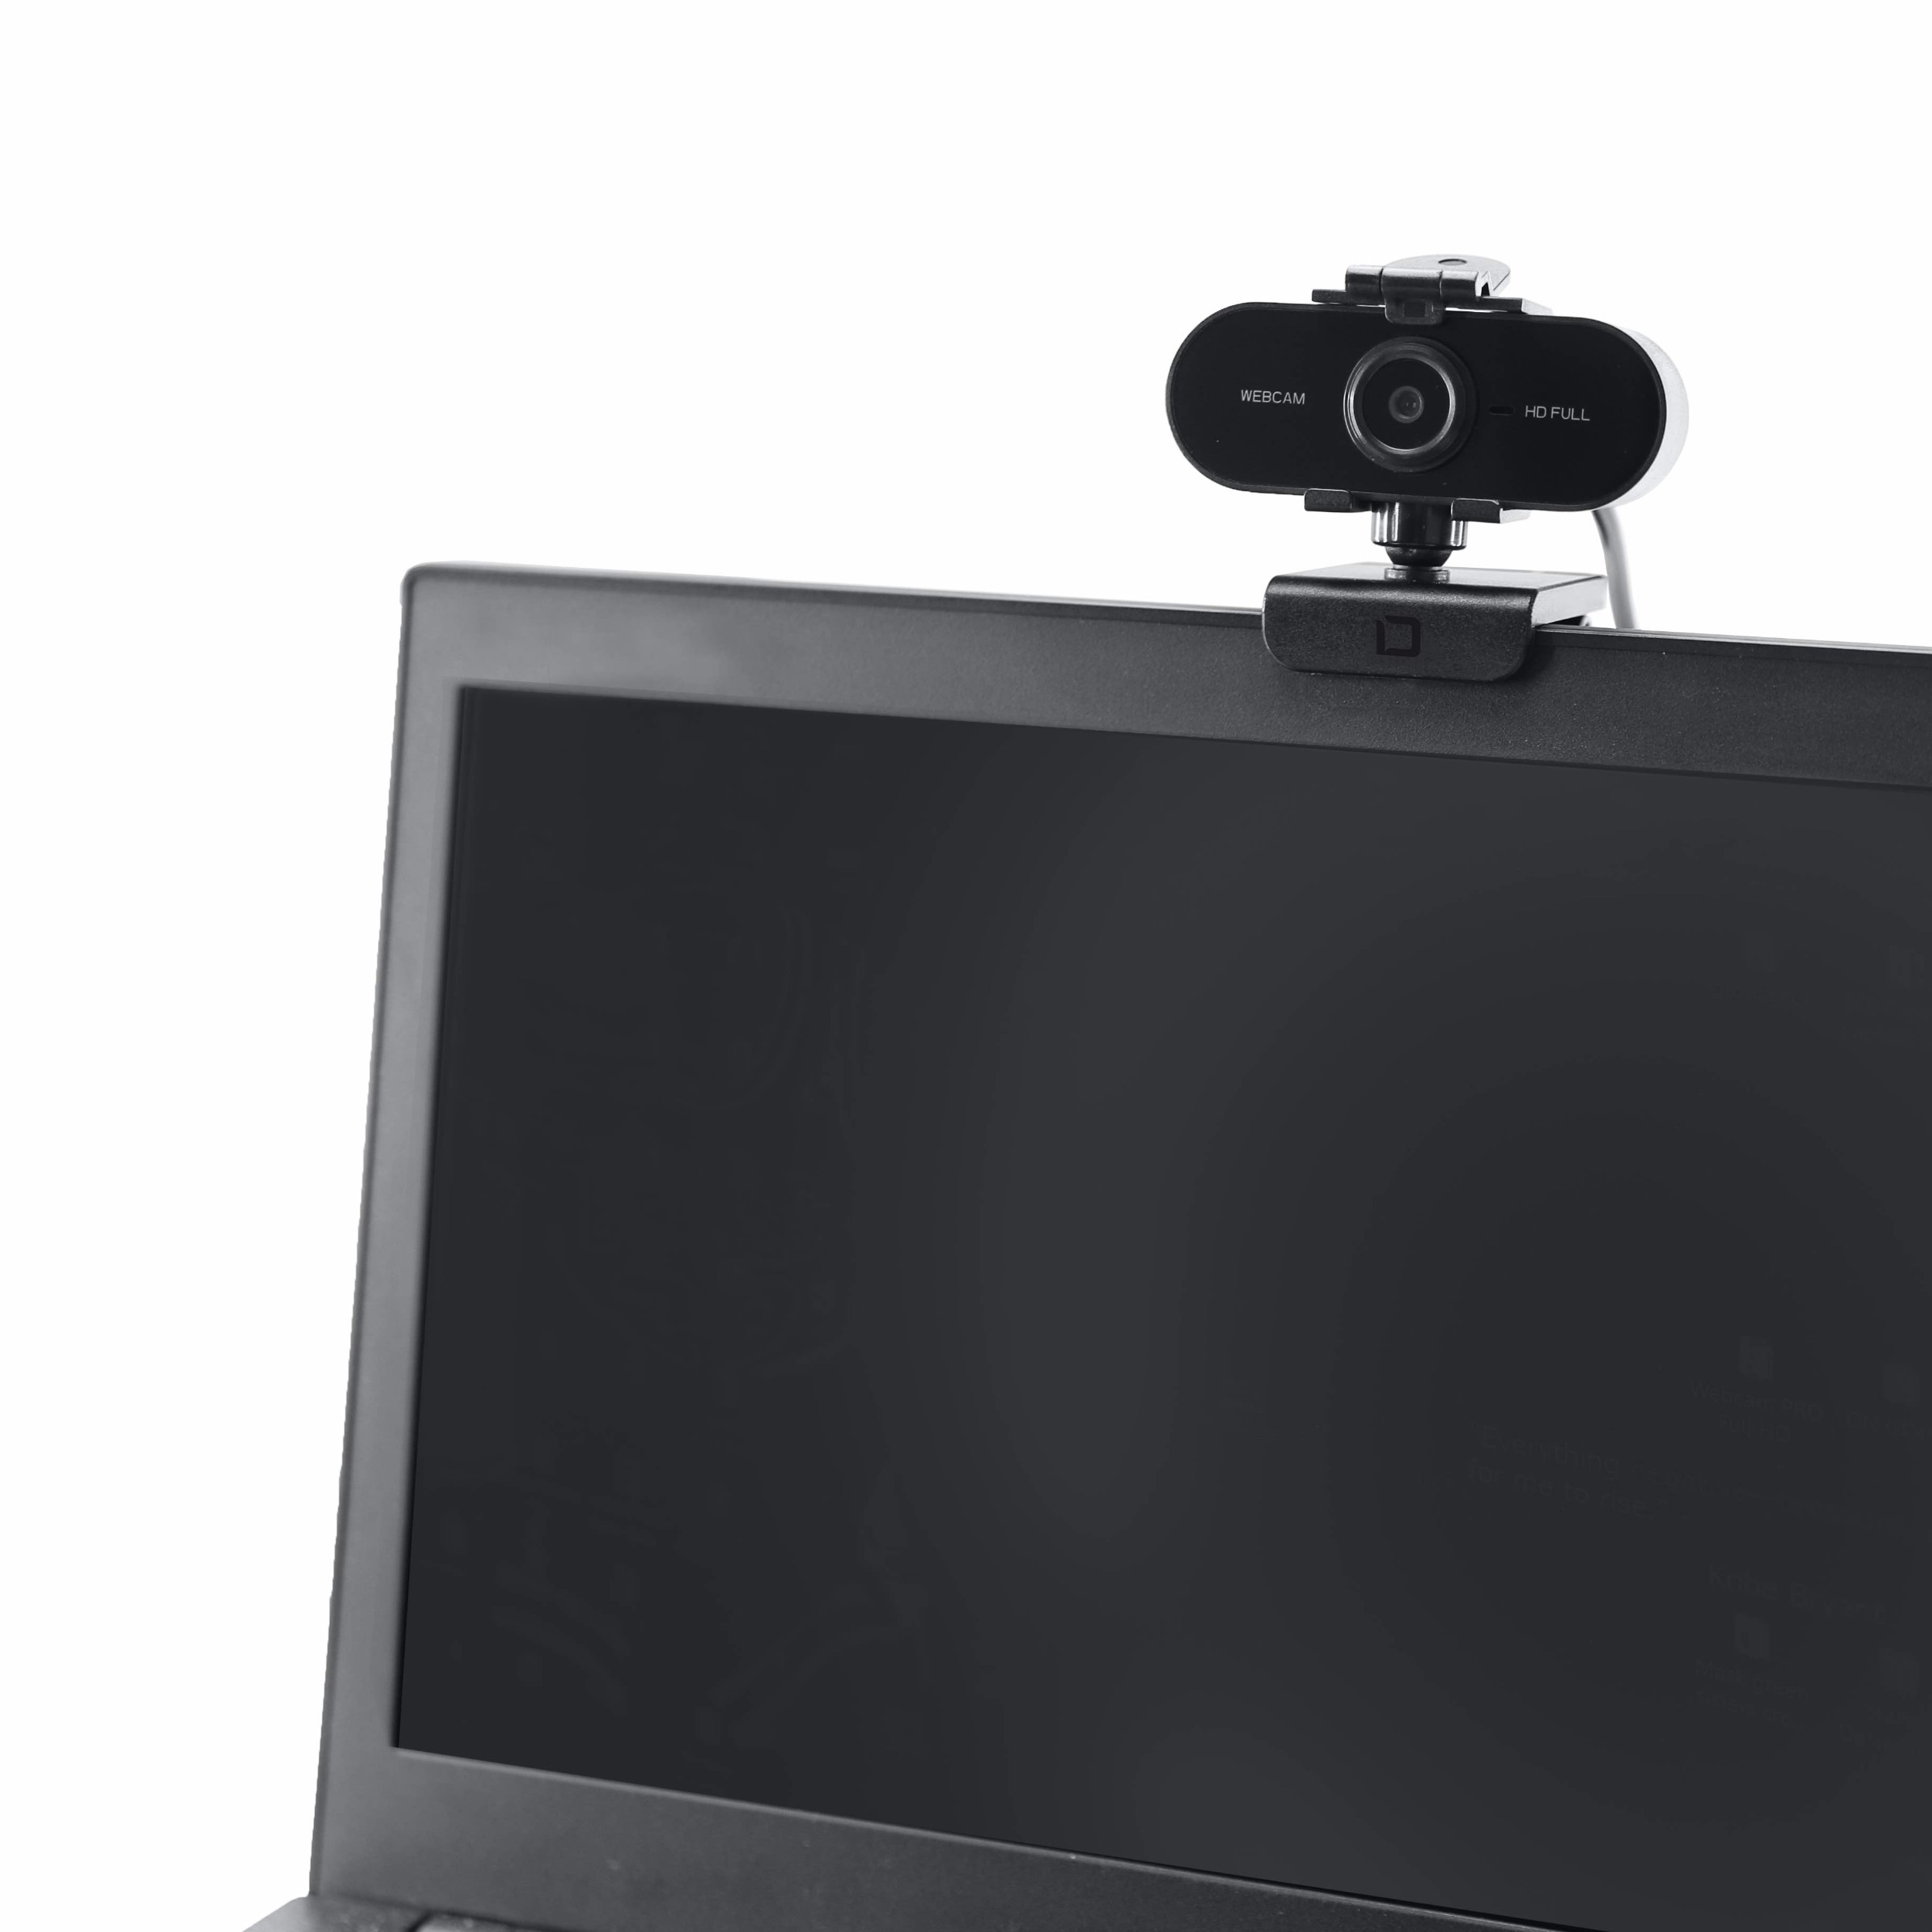  Webcam USB DICOTA PRO Plus Full HD 1080p autofocus avec microphone (D31841), informatique ile de la Réunion 974